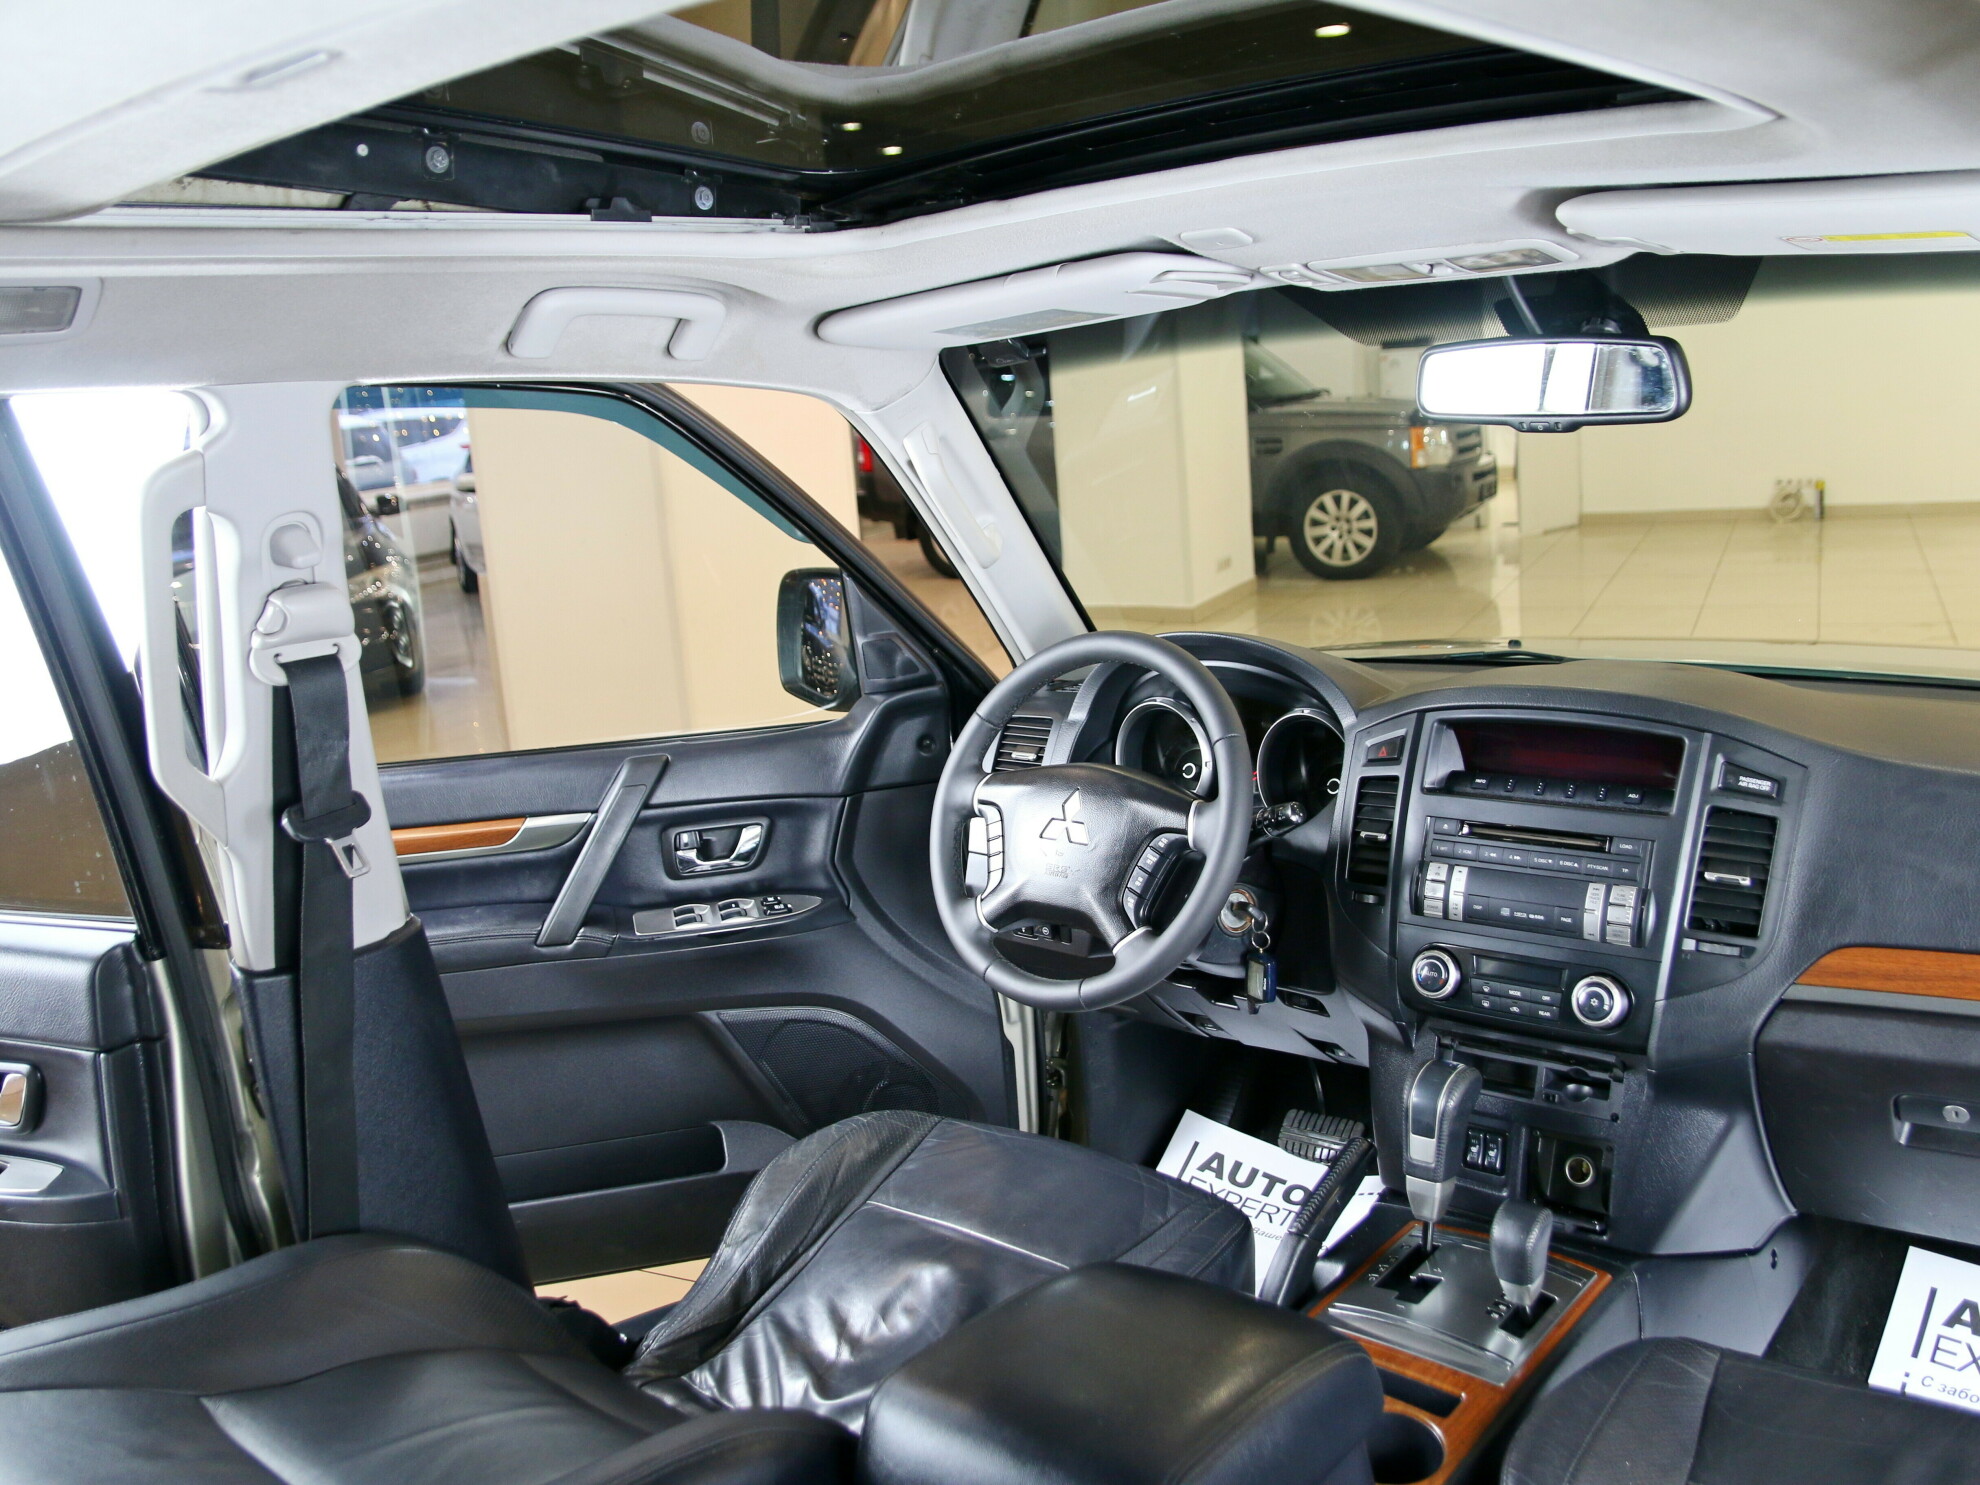 112 2011. Mitsubishi Pajero 2011 салон.